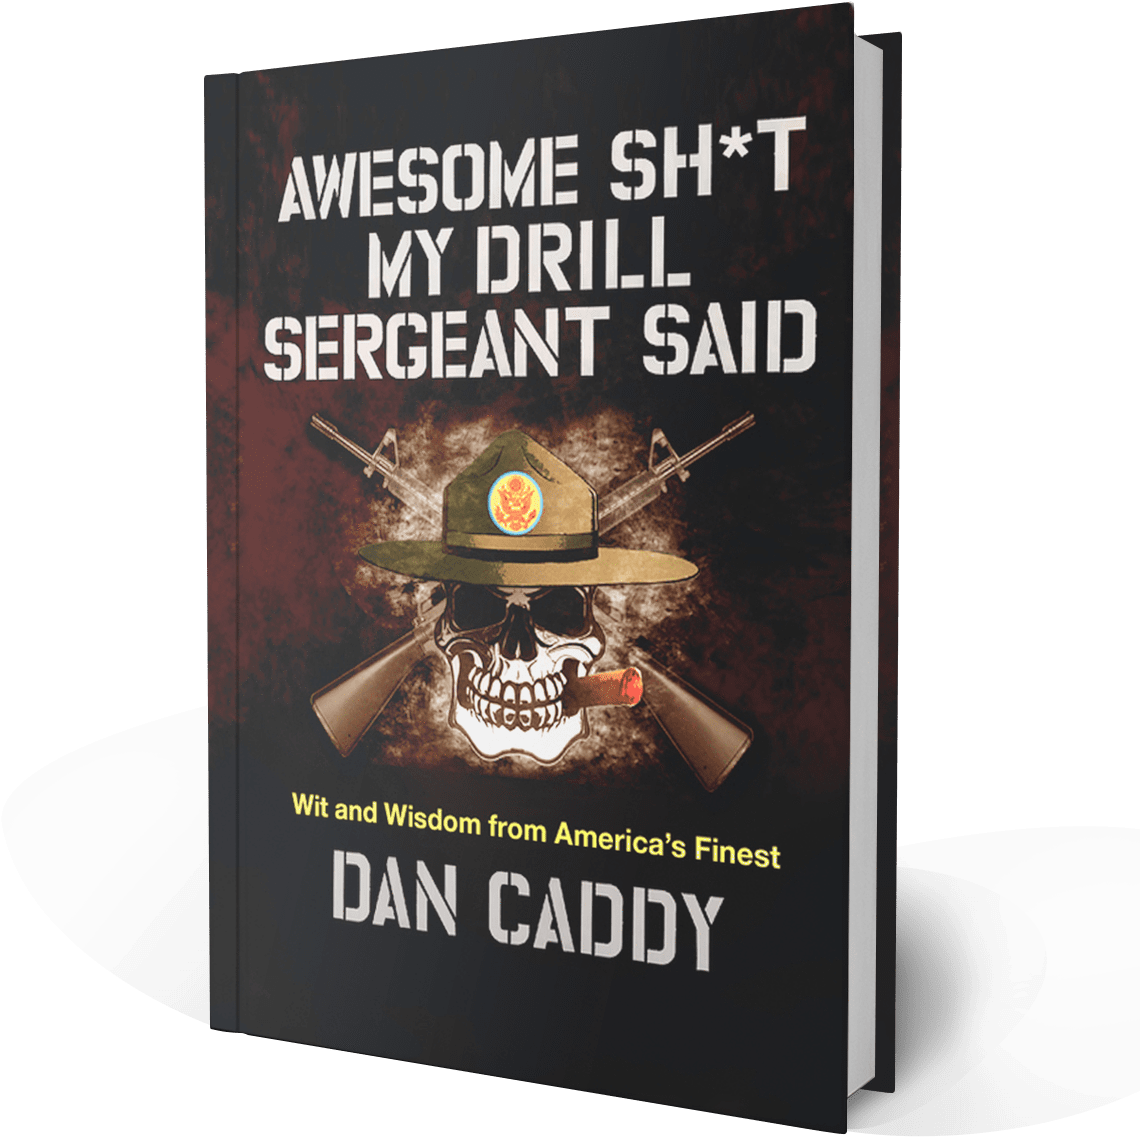 Military Humor Book Cover Dan Caddy PNG image